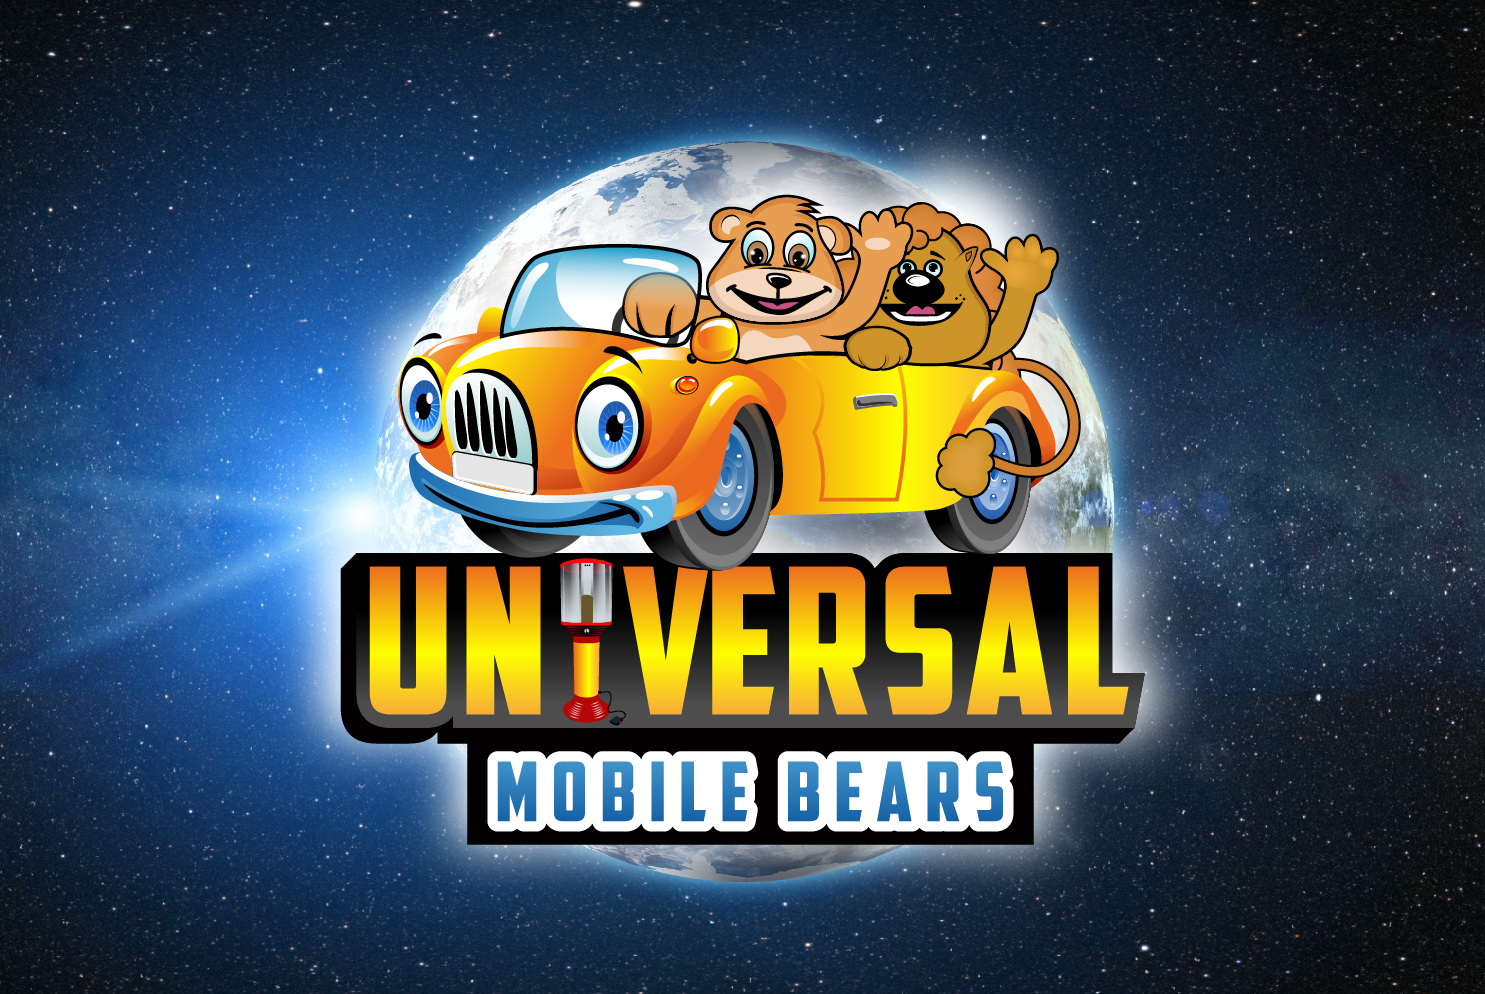 Universal Mobile Bears